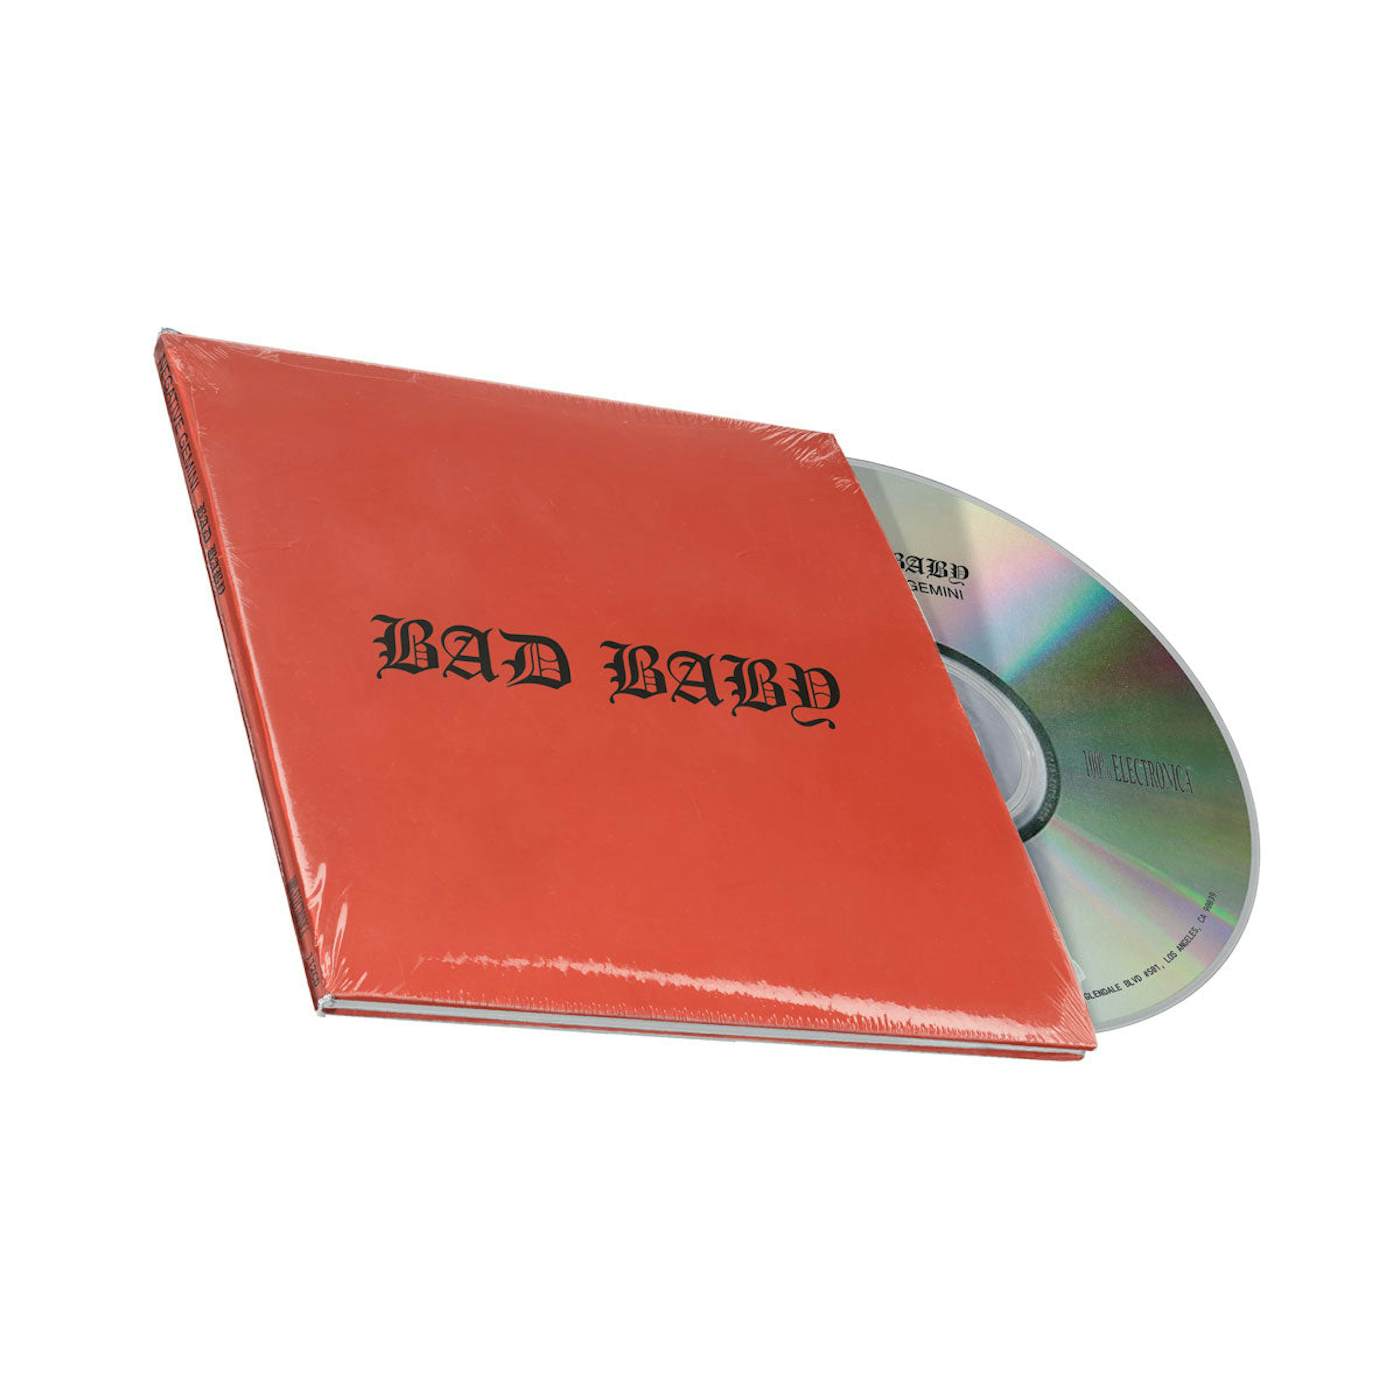 NEGATIVE GEMINI Bad Baby CD